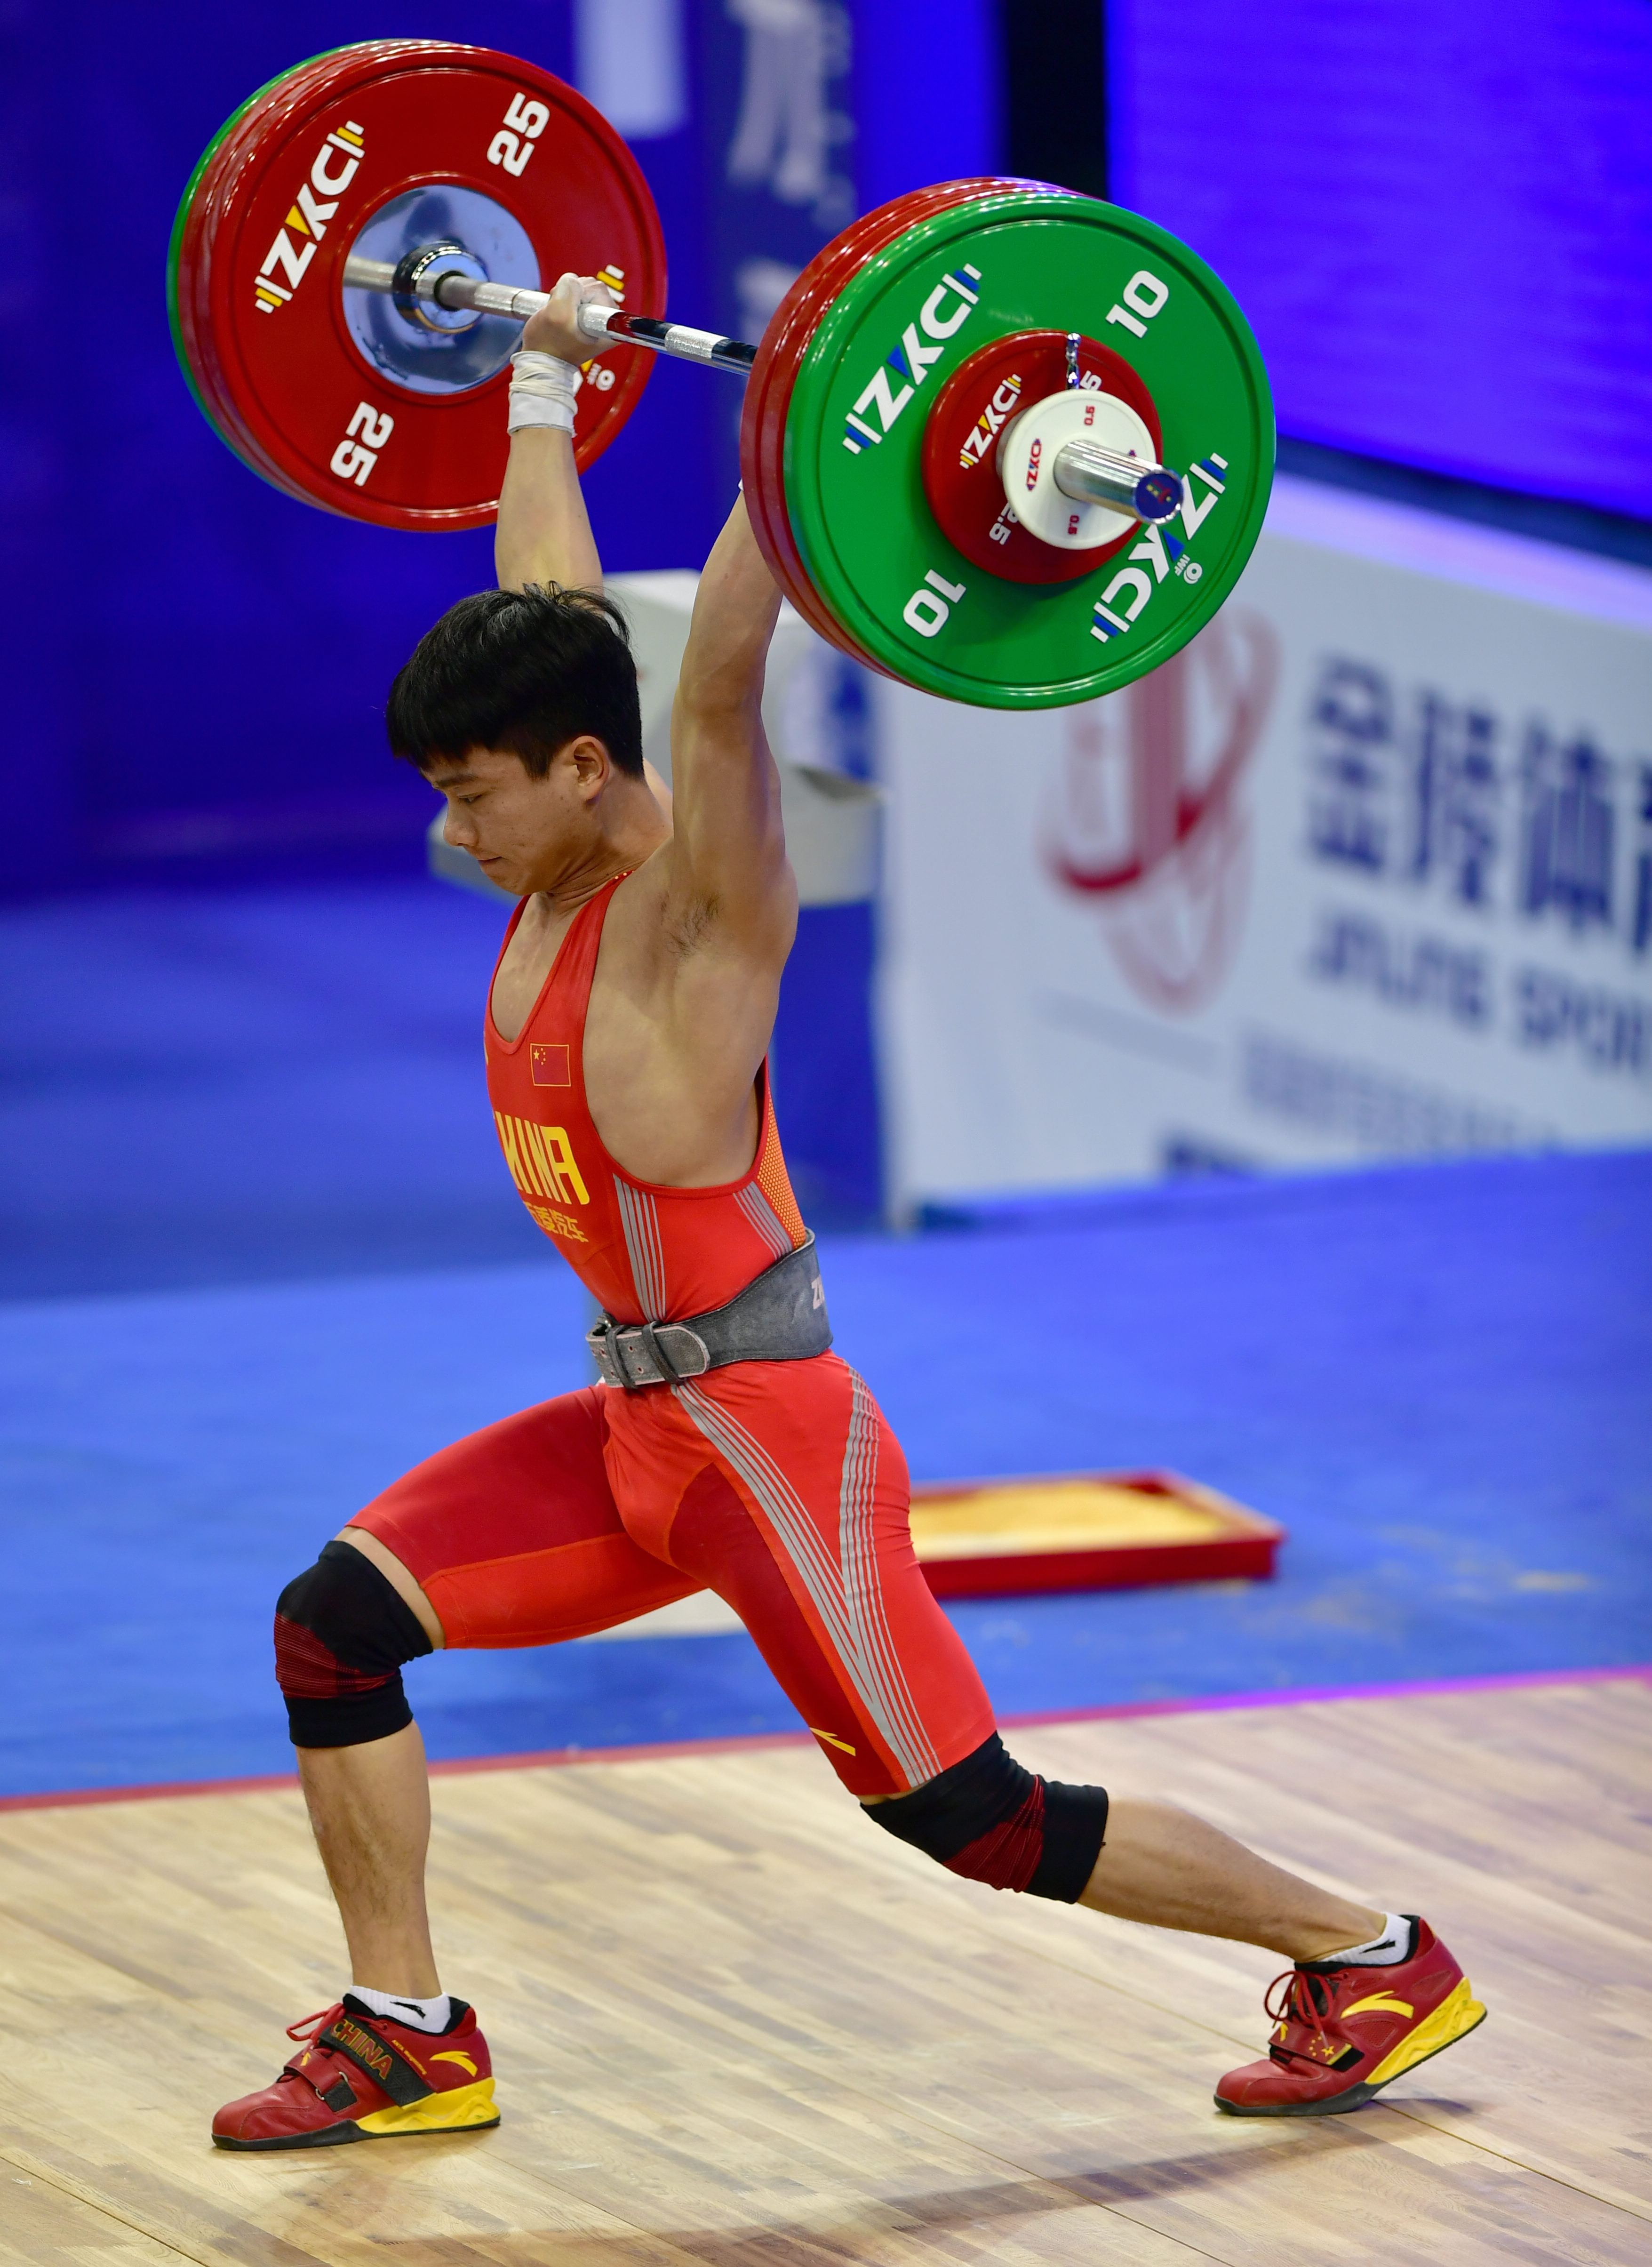 举重——世界杯赛:王浩获男子61公斤级总成绩季军